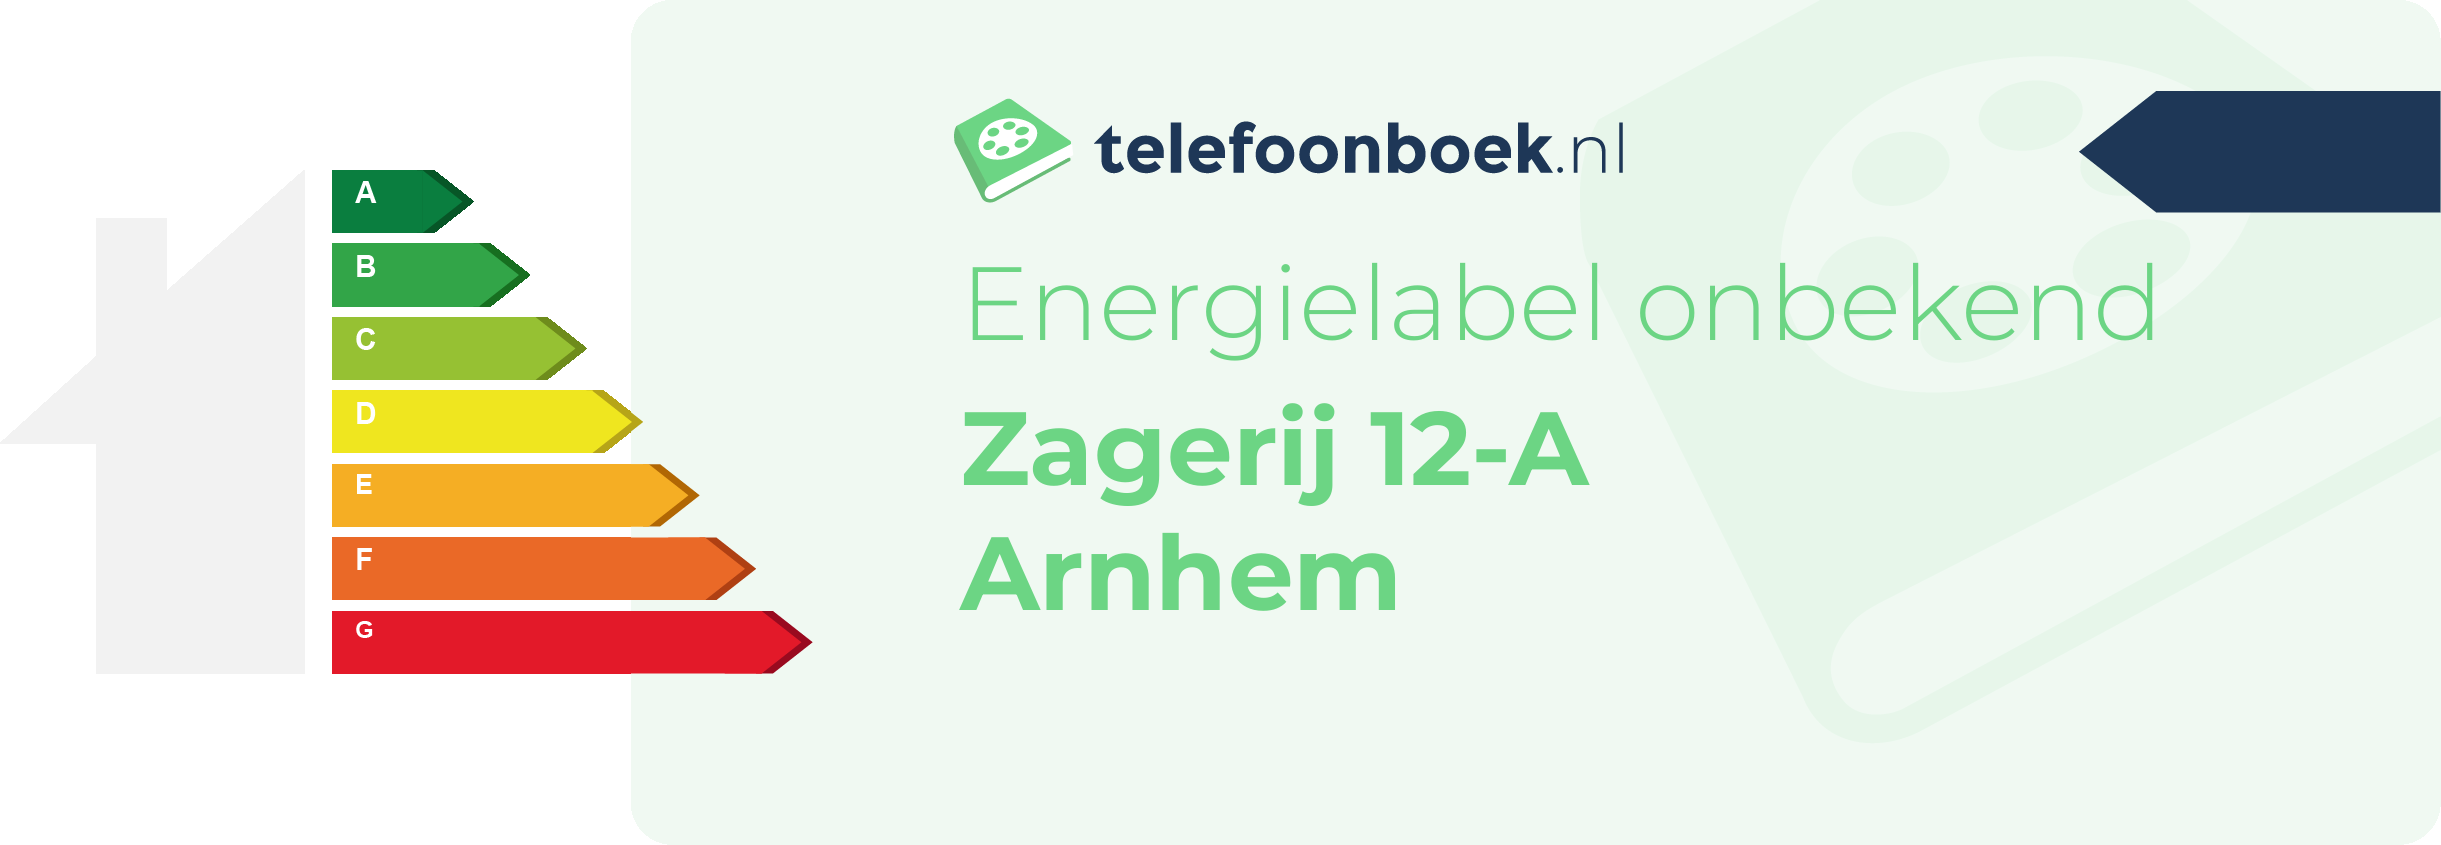 Energielabel Zagerij 12-A Arnhem